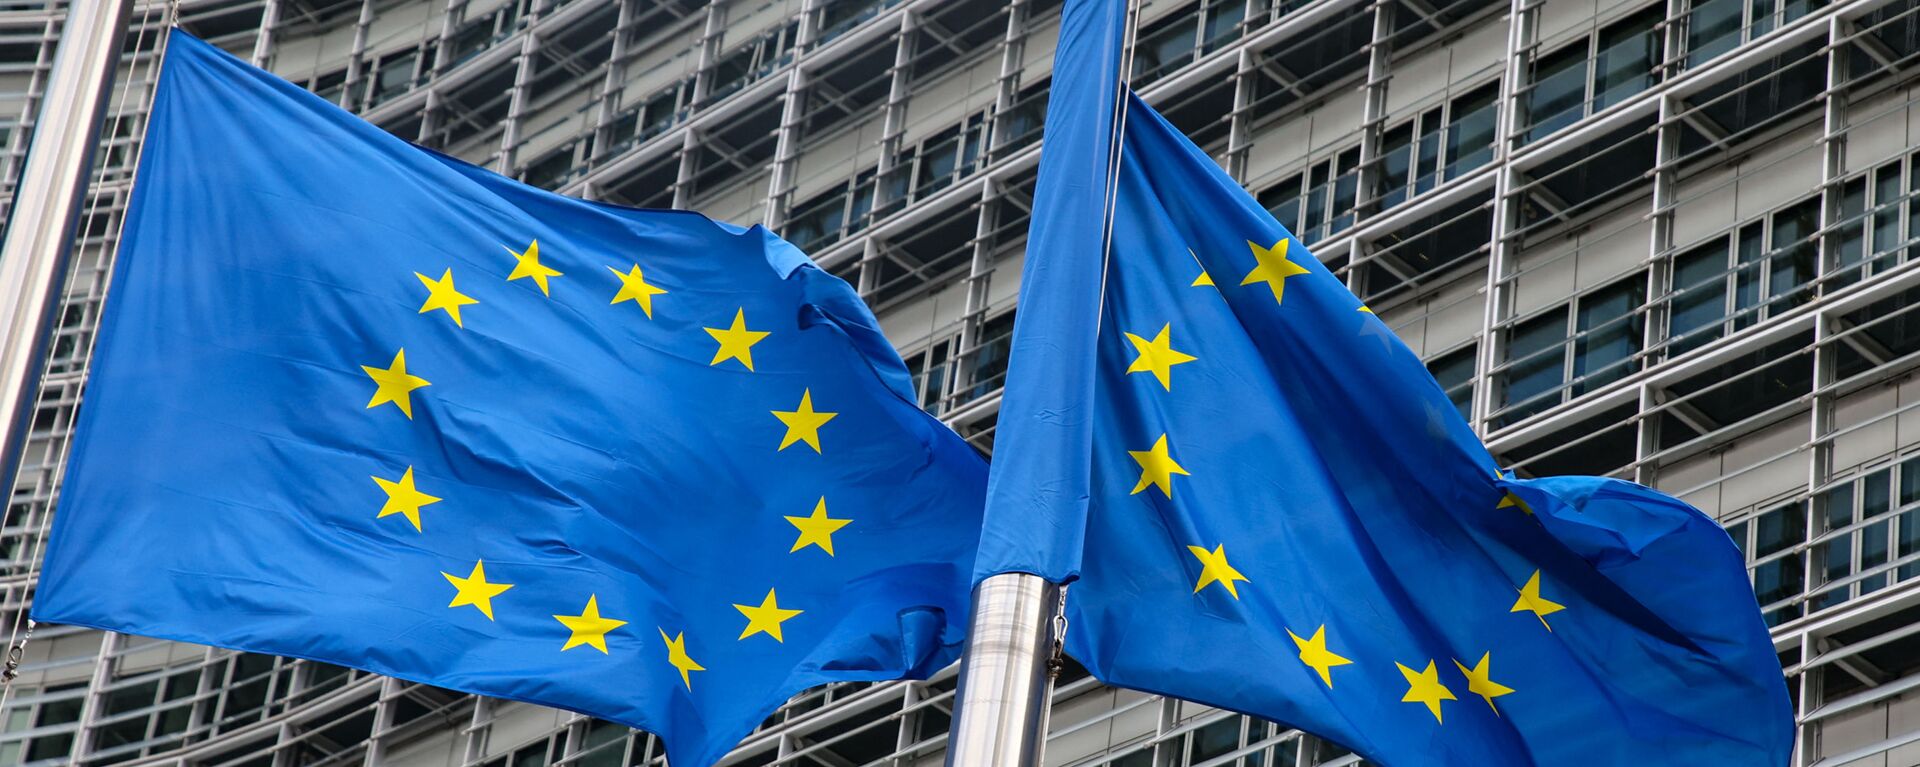 Флаги Европейского союза у штаб-квартиры Европейской комиссии в Брюсселе  - Sputnik Литва, 1920, 17.03.2021